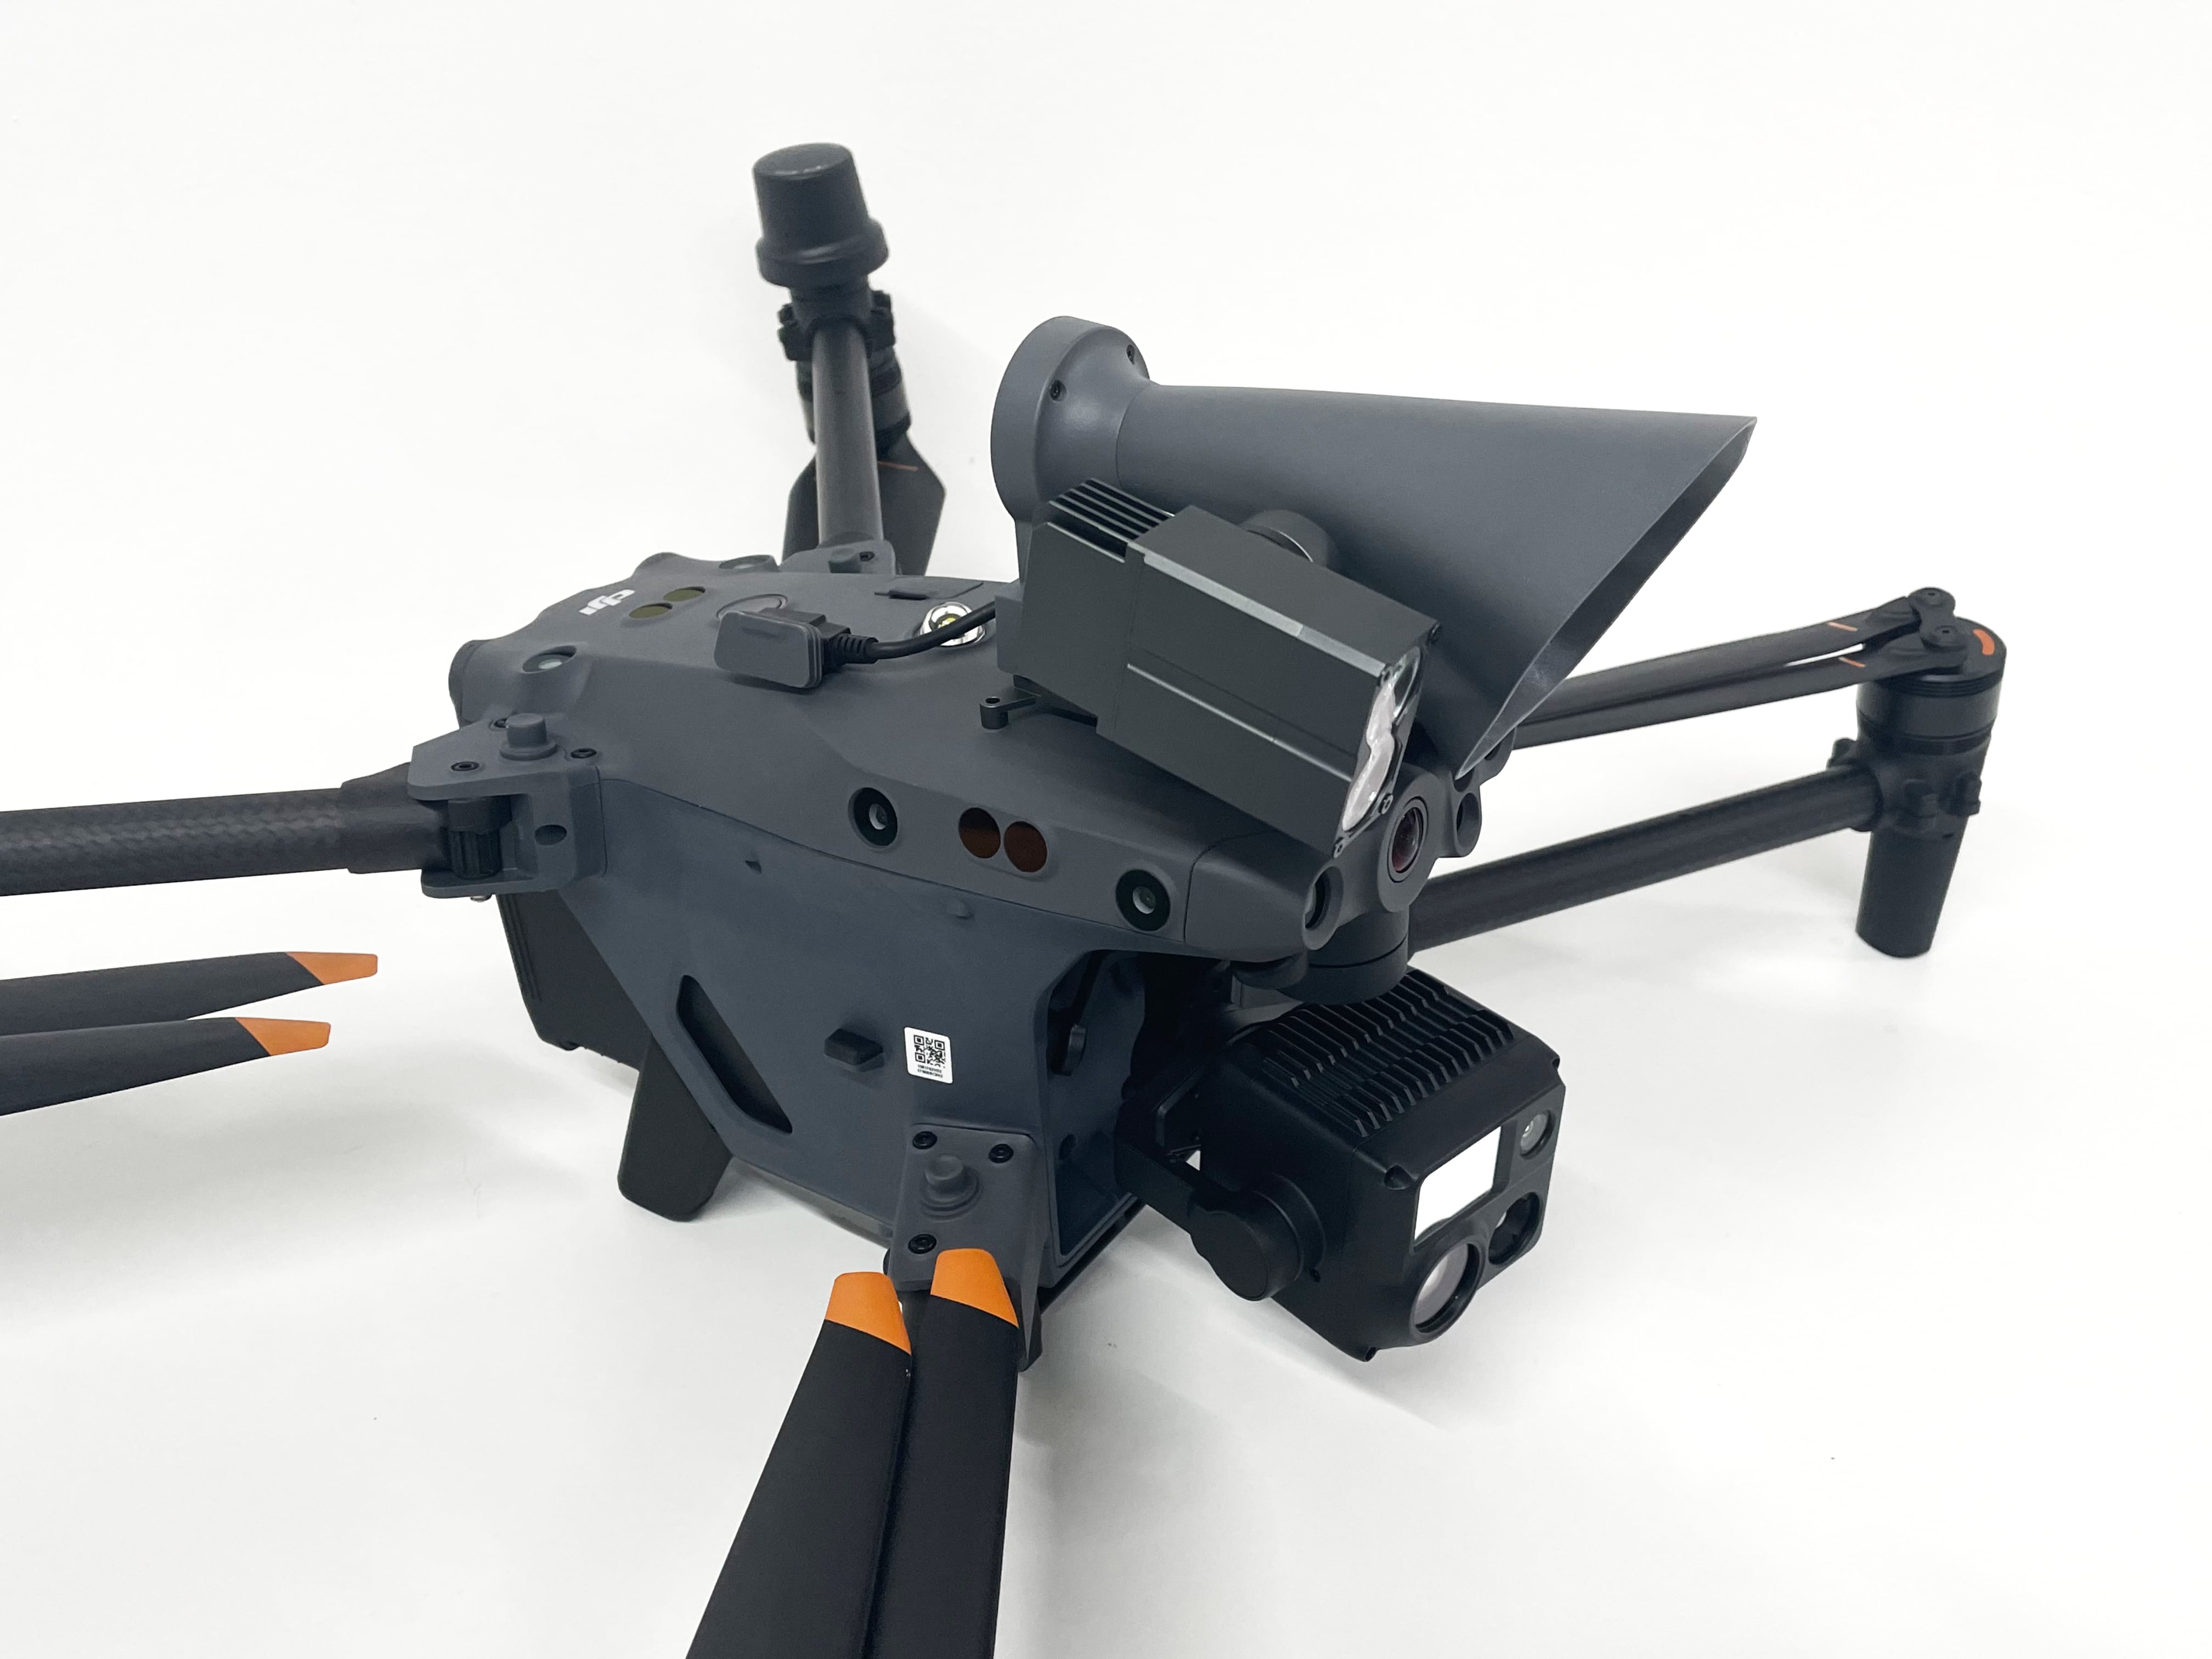 LP12 LED-Lautsprecher und Projektor für DJI M30 - Drone Parts Center